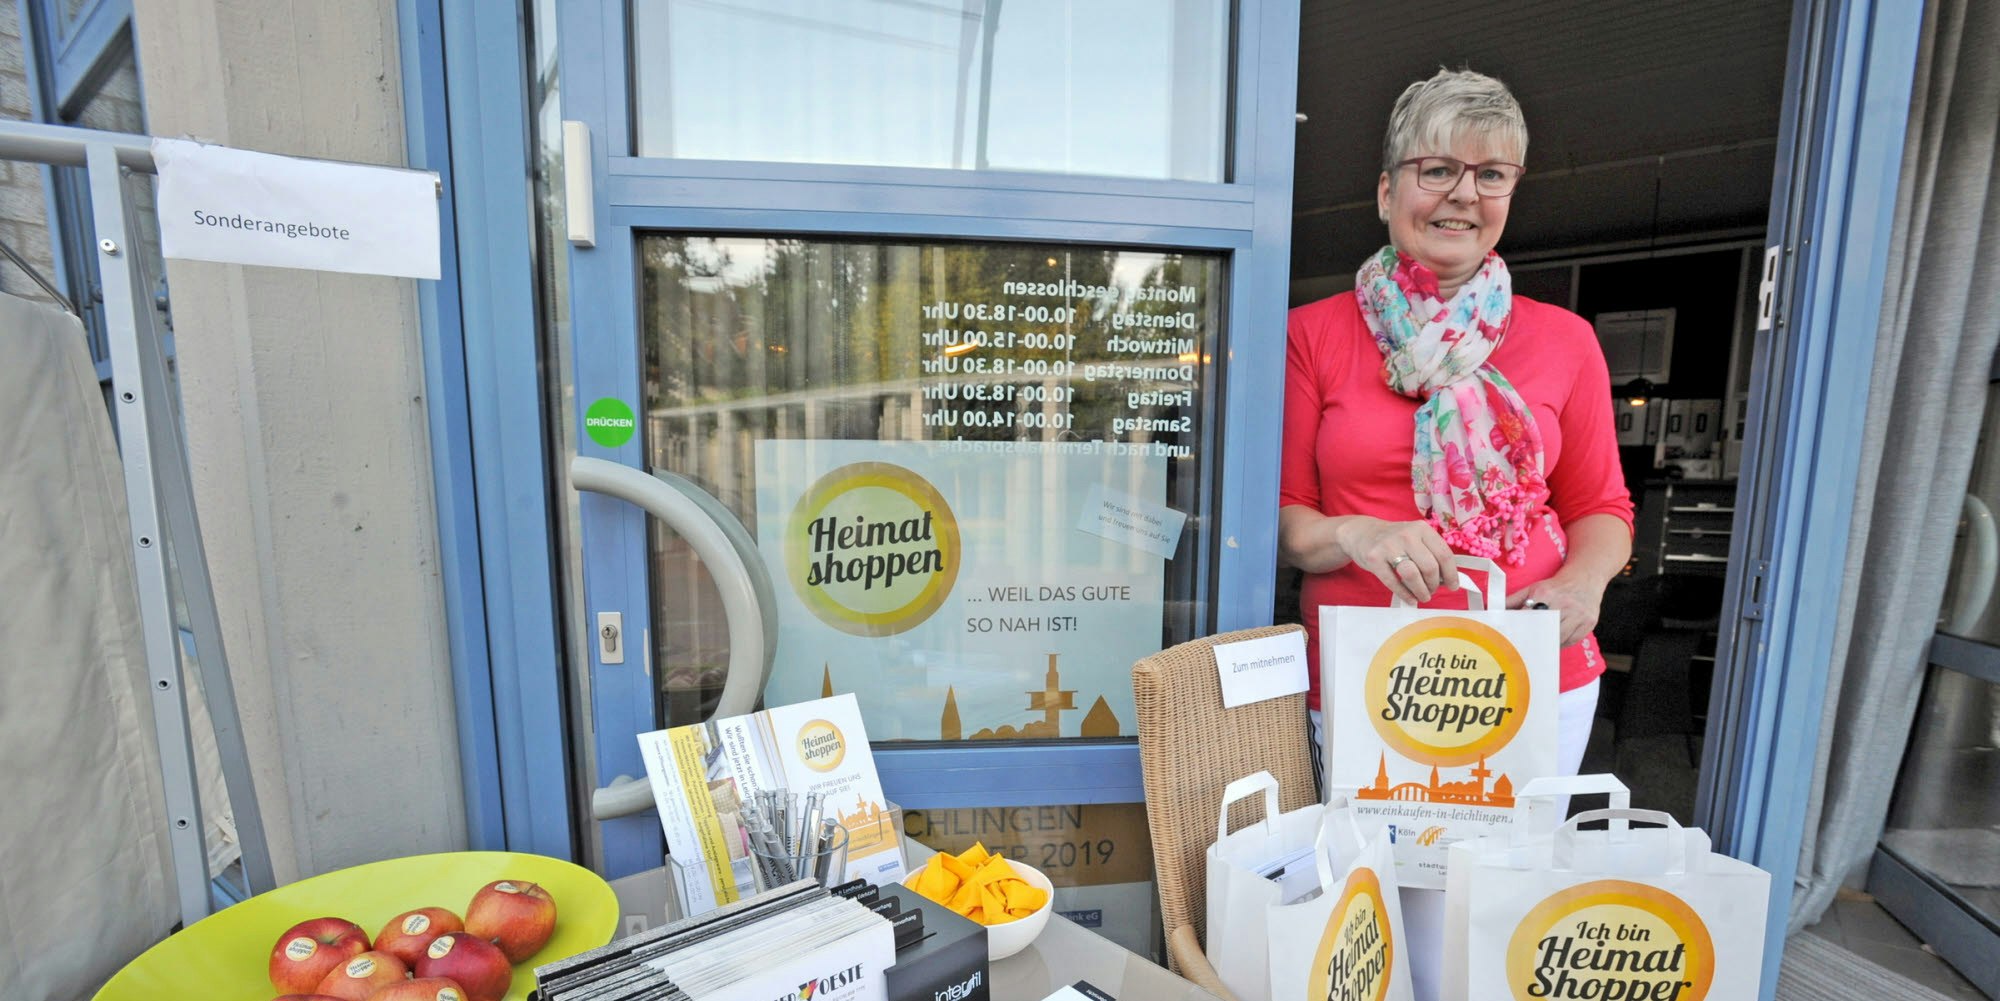 Äpfel und Überraschungstütchen: Auch Silvia Voeste mit ihrem Einrichtungsgeschäft machte mit beim „Heimatshoppen“. Fotos: Britta Berg